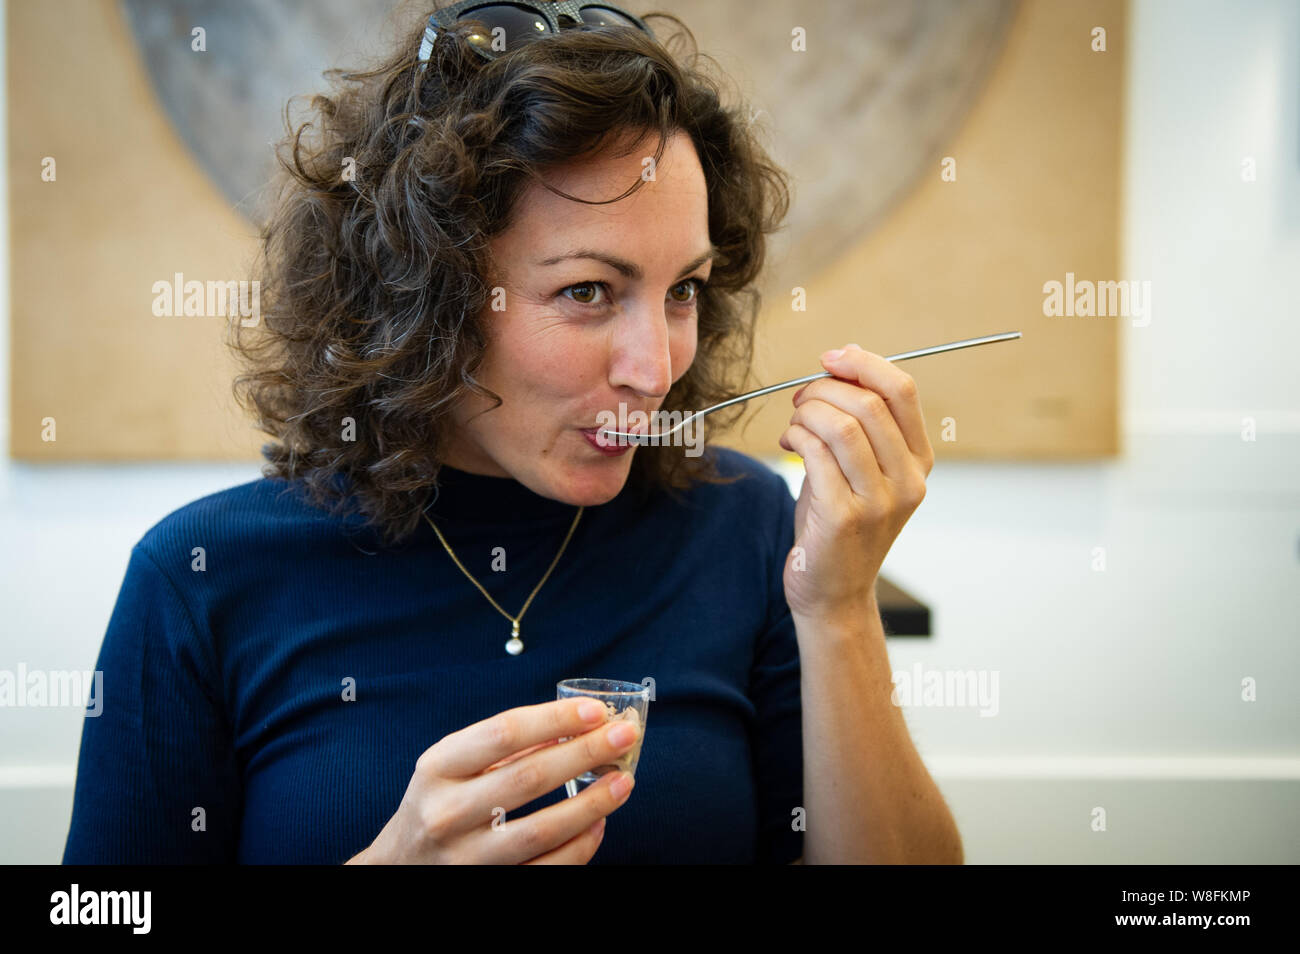 Den Haag. Een jonge Vrouw eet chocolademousse. Foto: Gerrit De Heus. Die Niederlande. Eine junge Frau essen chocolat Mousse. Foto: Gerrit De Heus. Stockfoto